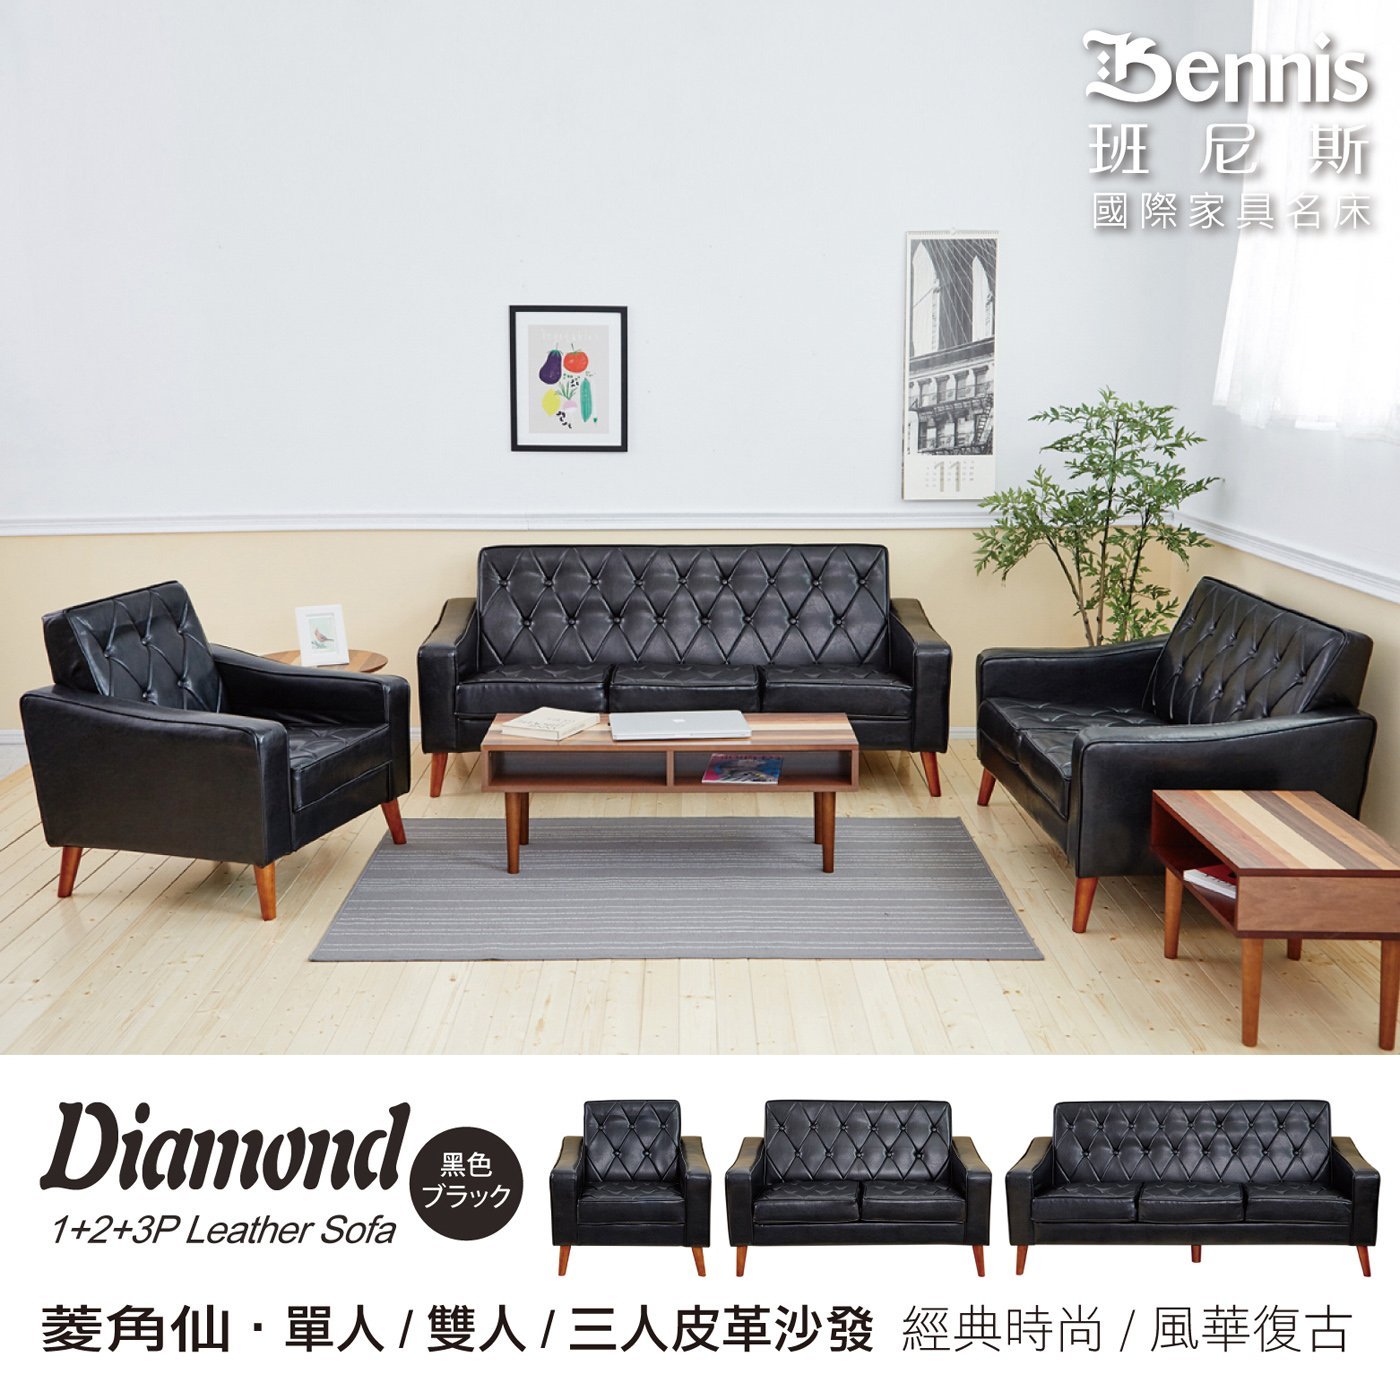 日本熱賣‧Diamond菱角仙【單+雙+三人】皮革沙發